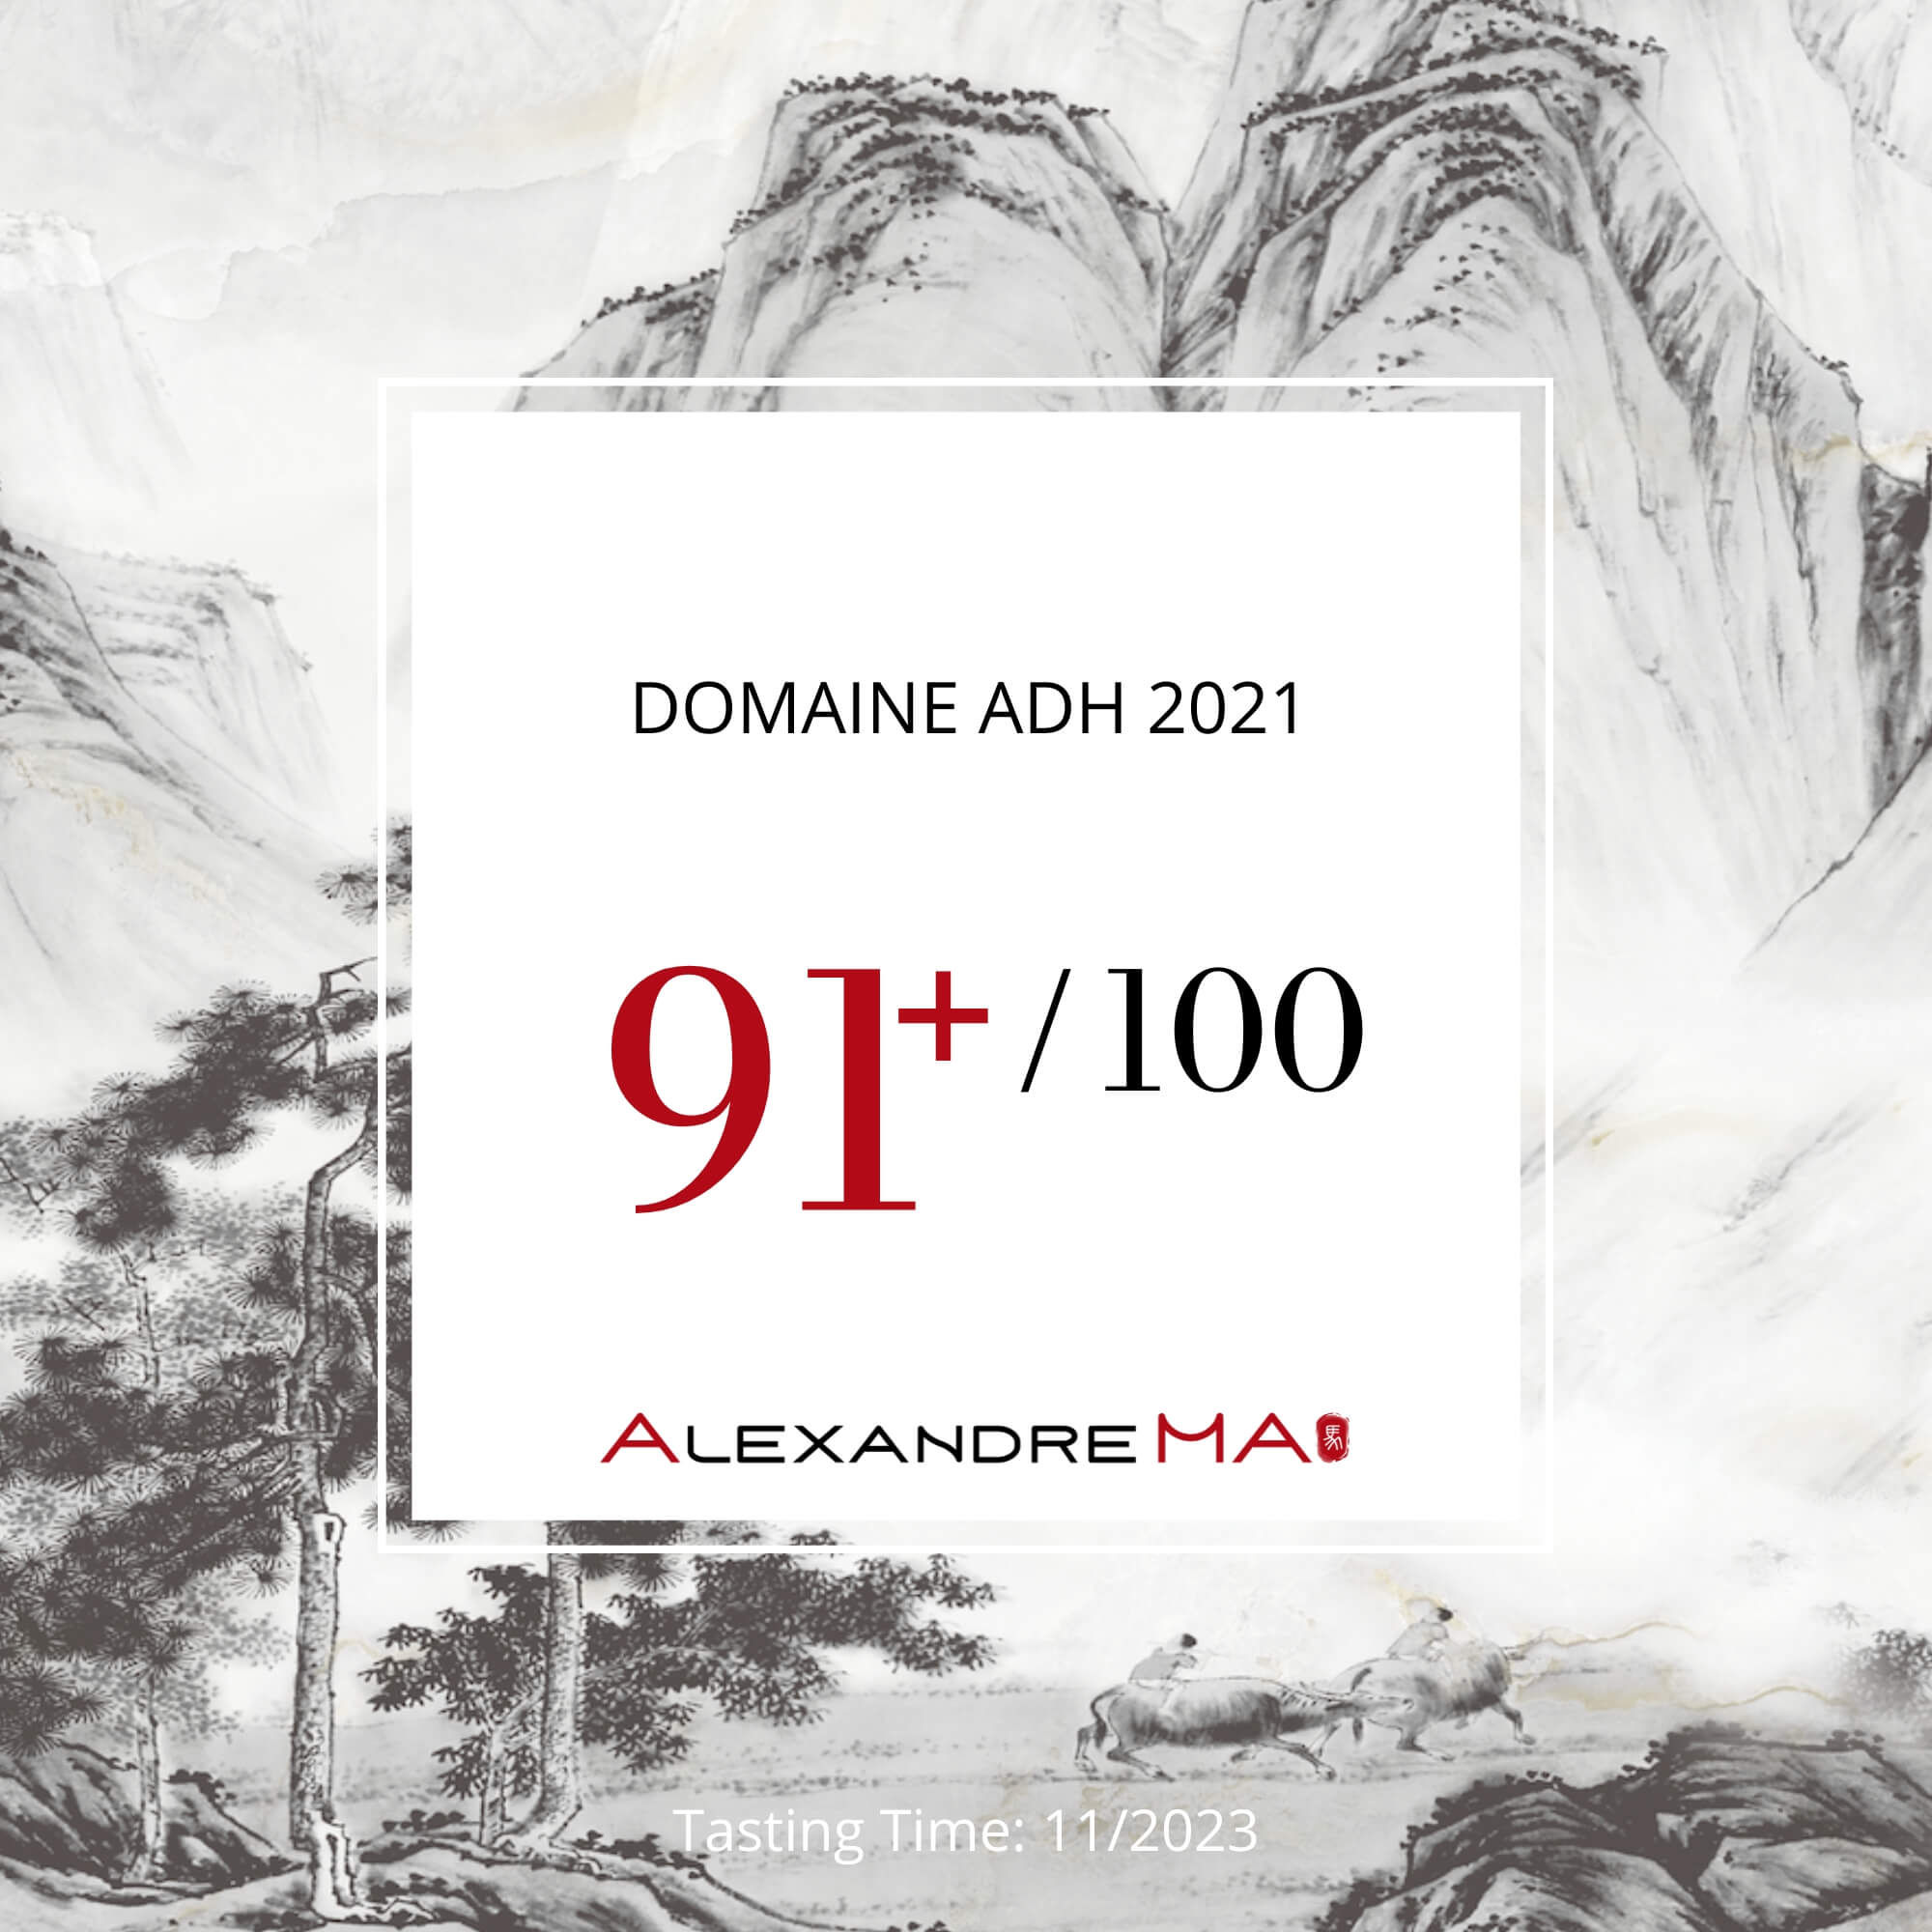 Domaine ADH 2021 - Alexandre Ma